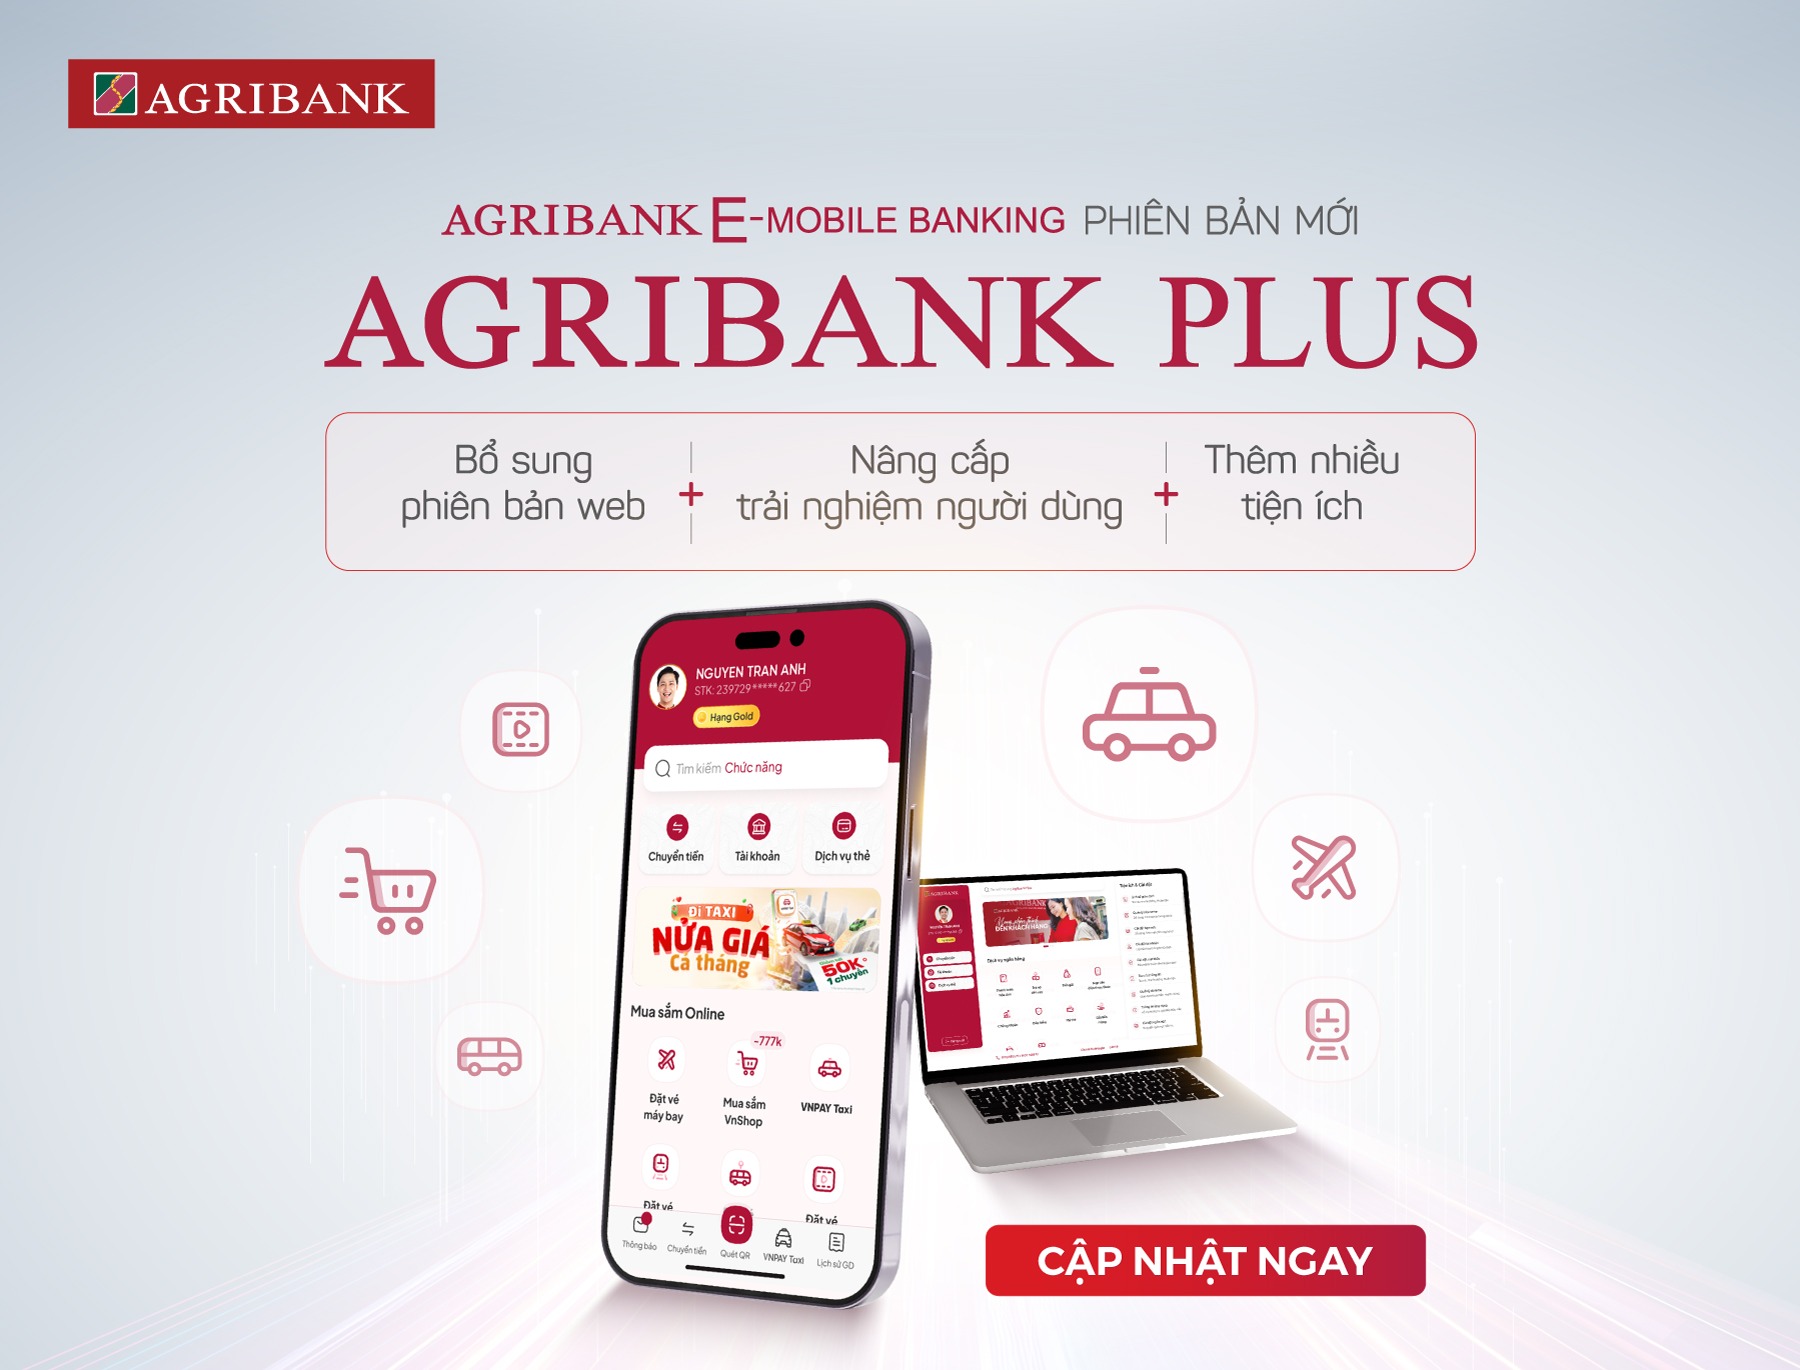 agribank-plus-phien-ban-cap-nhat-moi-nhat-cua-agribank-e-mobile-banking 